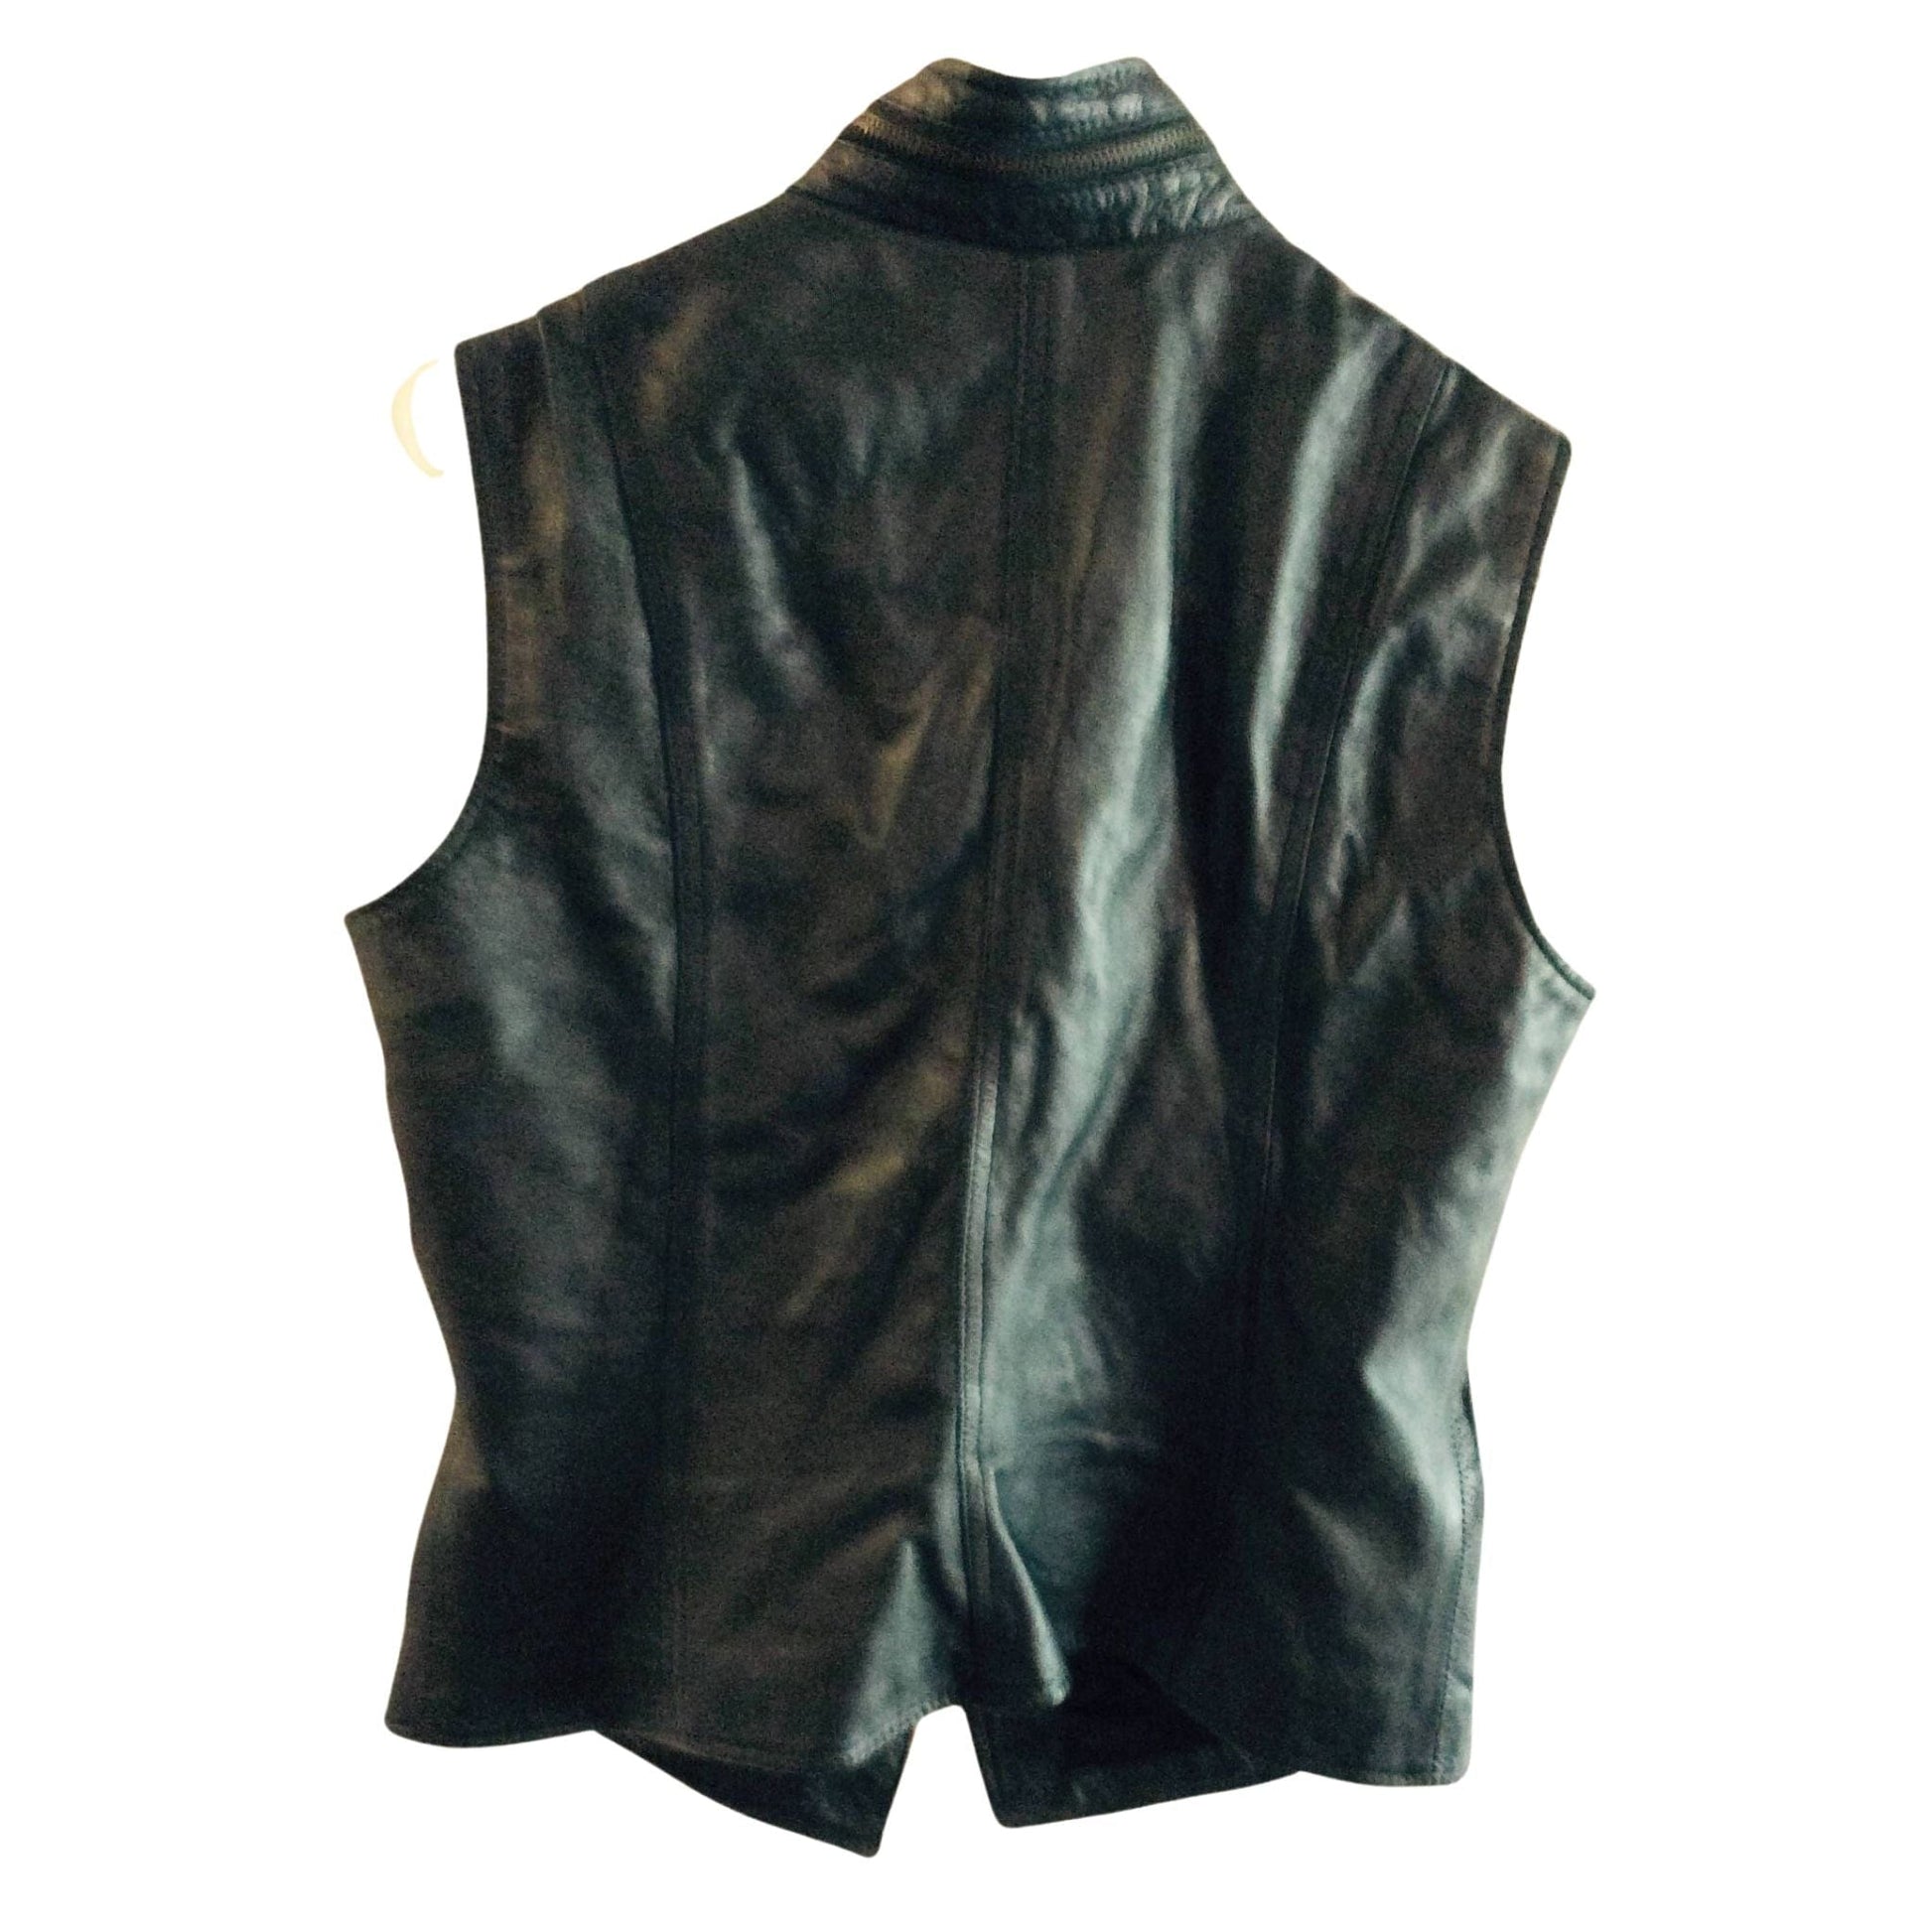 1990s Black Leather Vest Large / Black / Vintage 1990s